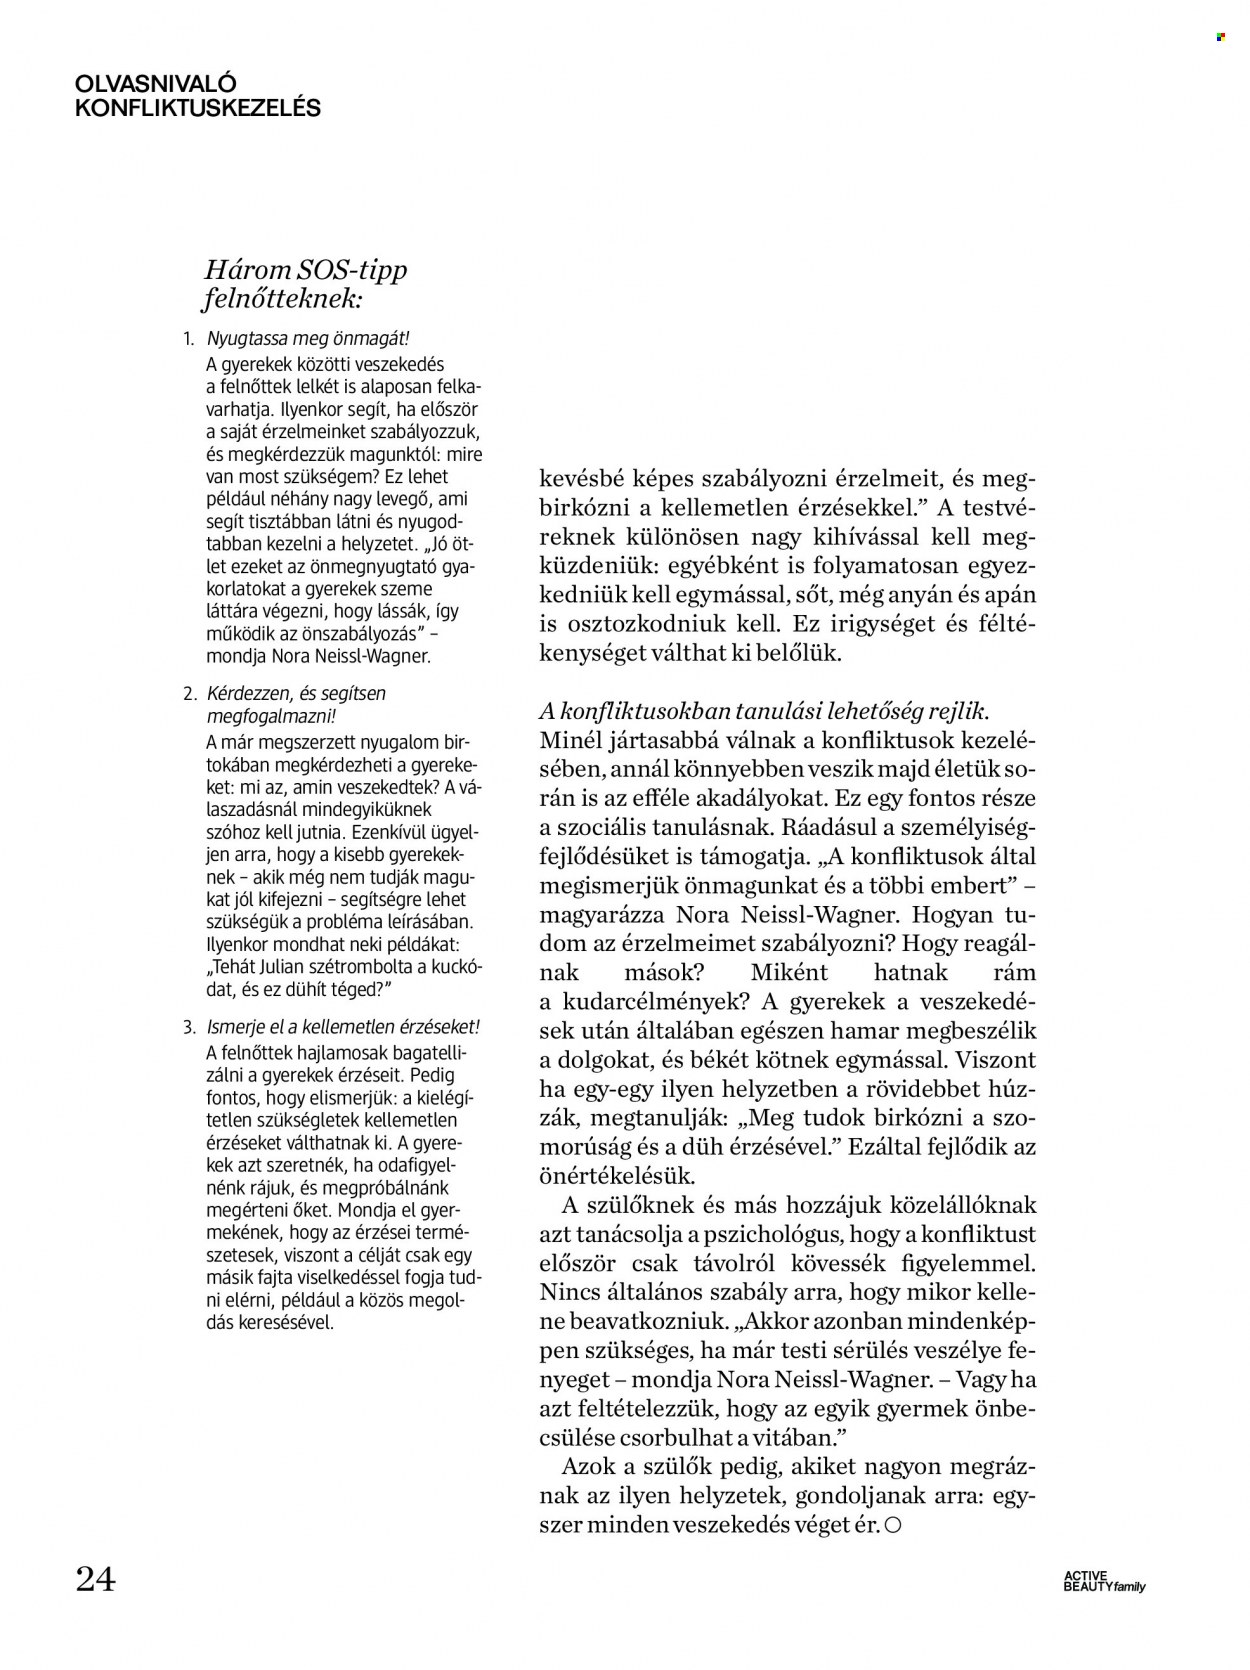 dm drogerie markt akciós újság érvényes: . 24. oldal